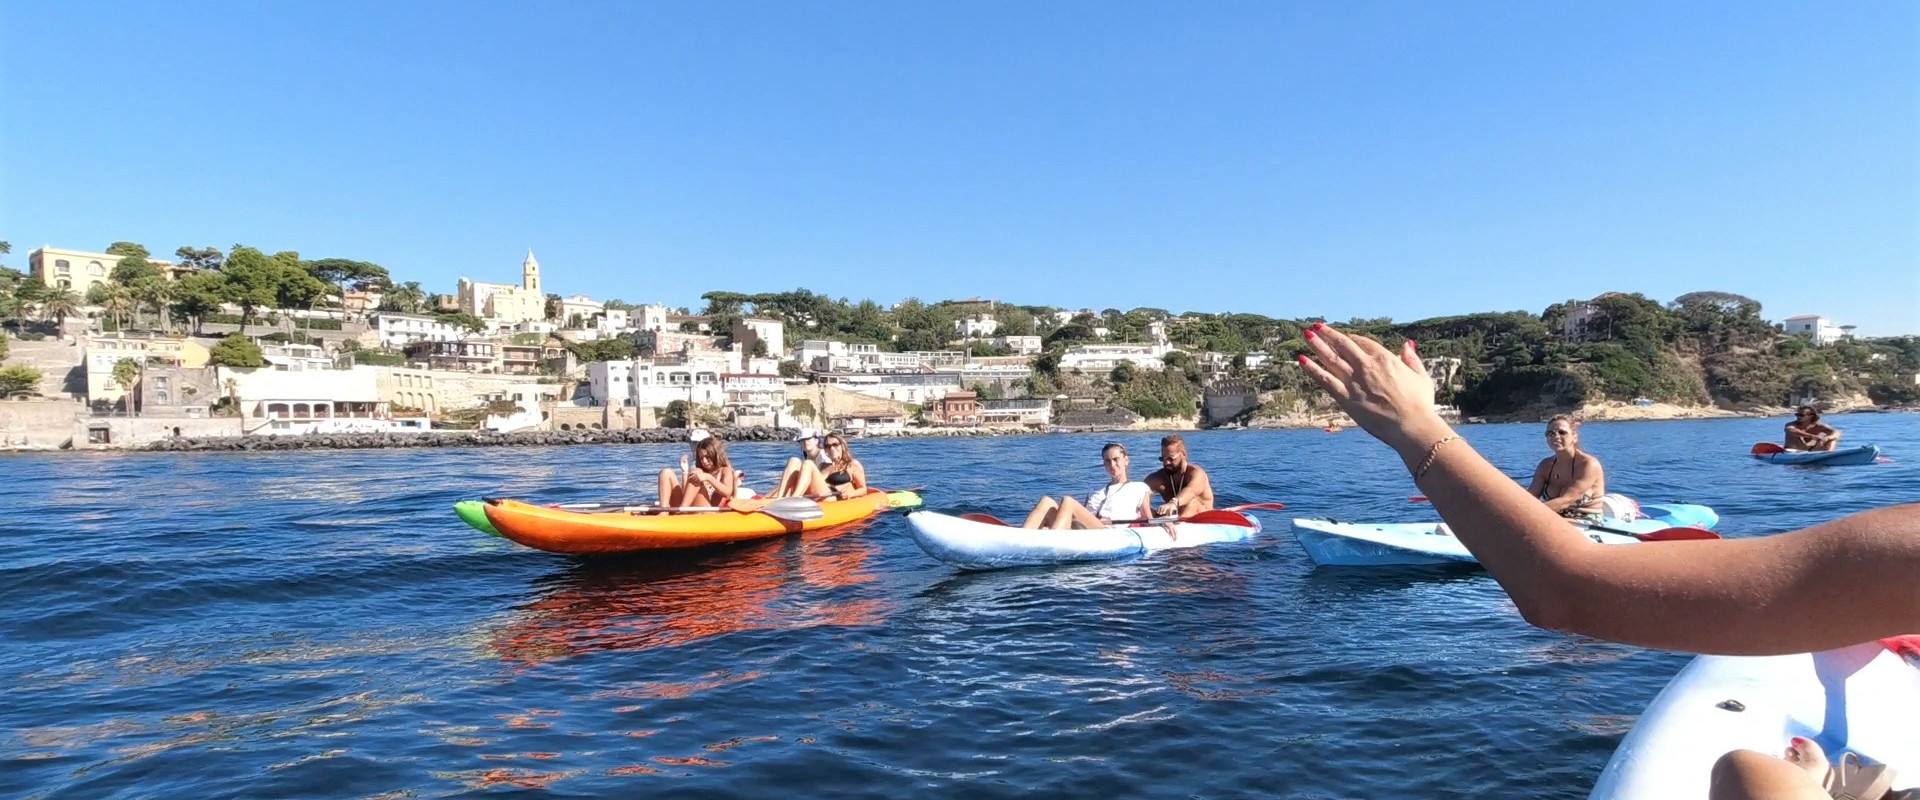 Gruppo in kayak, di fronte Marechiaro, ascolta guida turistica che spiega